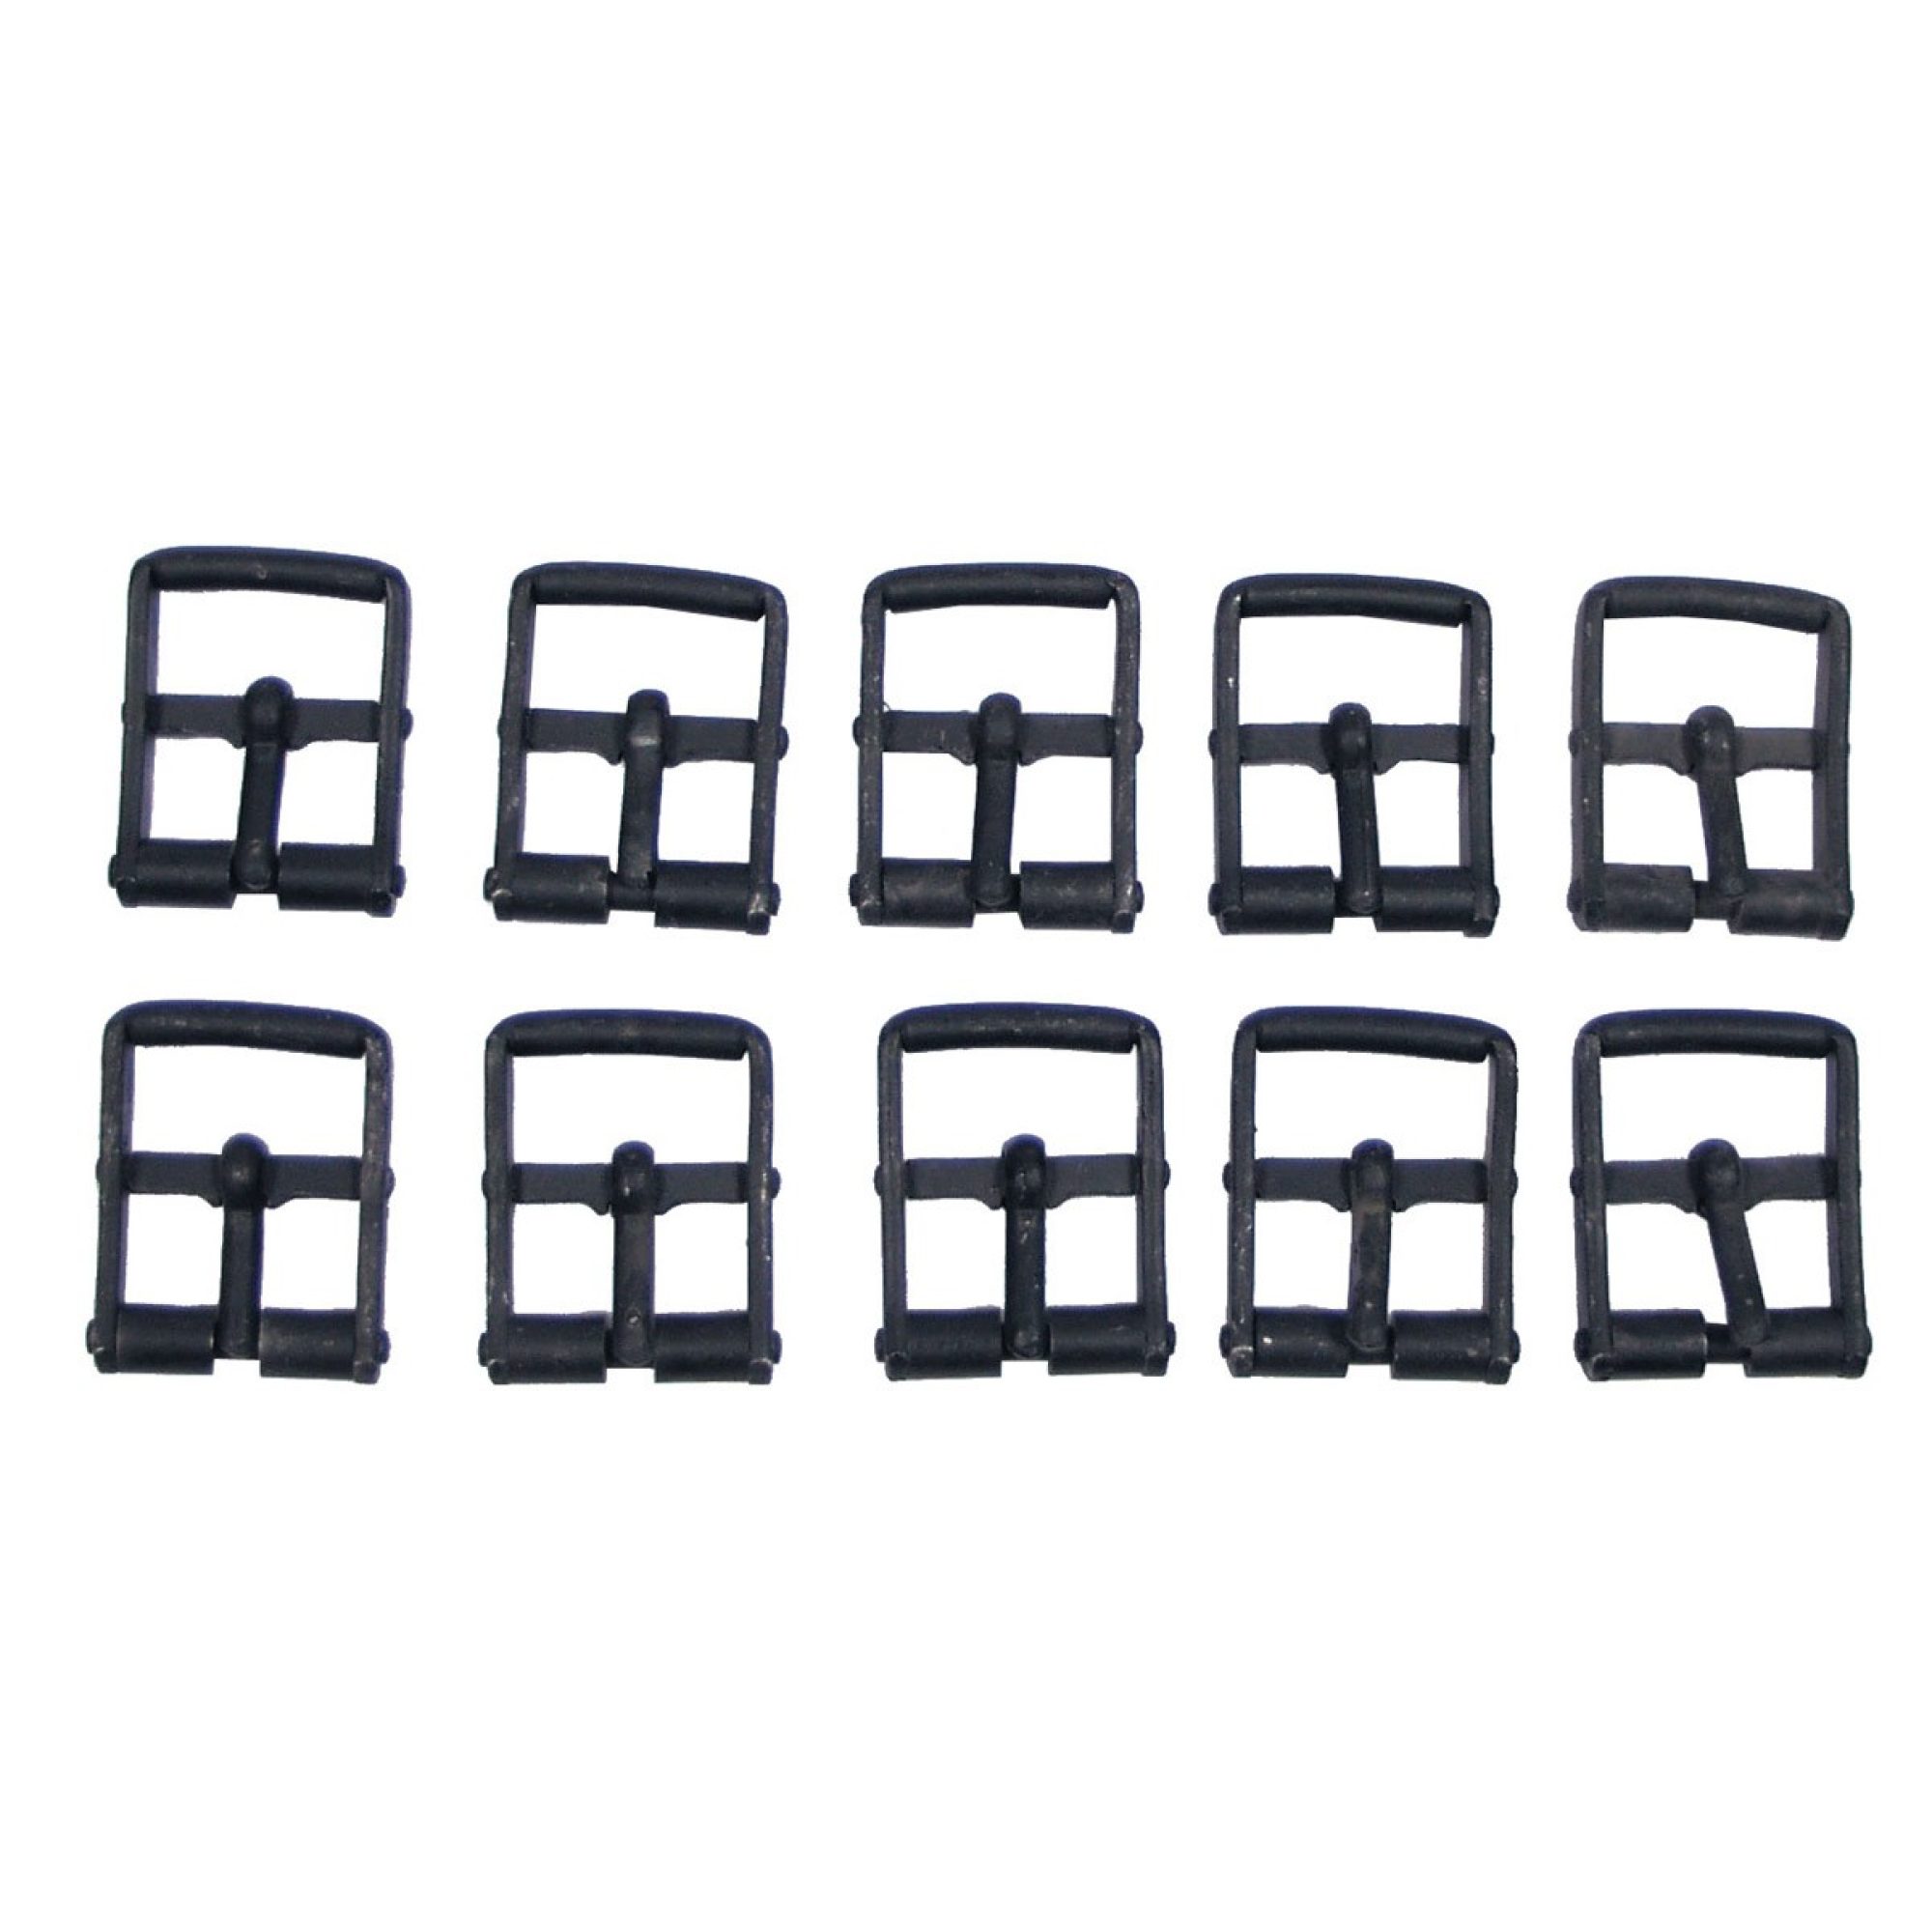 ABVERKAUF – Verschluss,  1 Dorn,  schwarz, 3 cm,  10 St./Sack